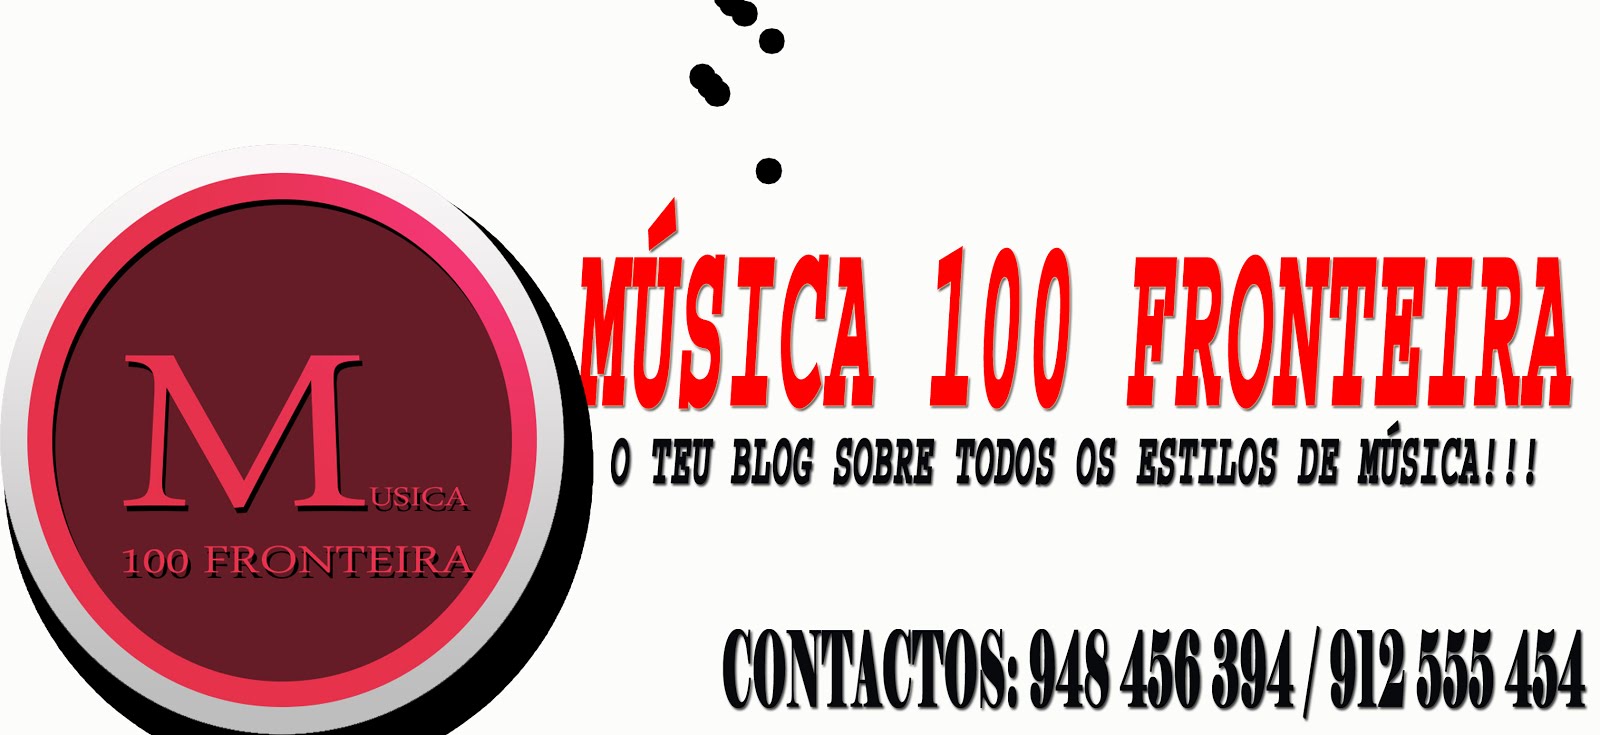 MÚSICA 100 FRONTEIRA